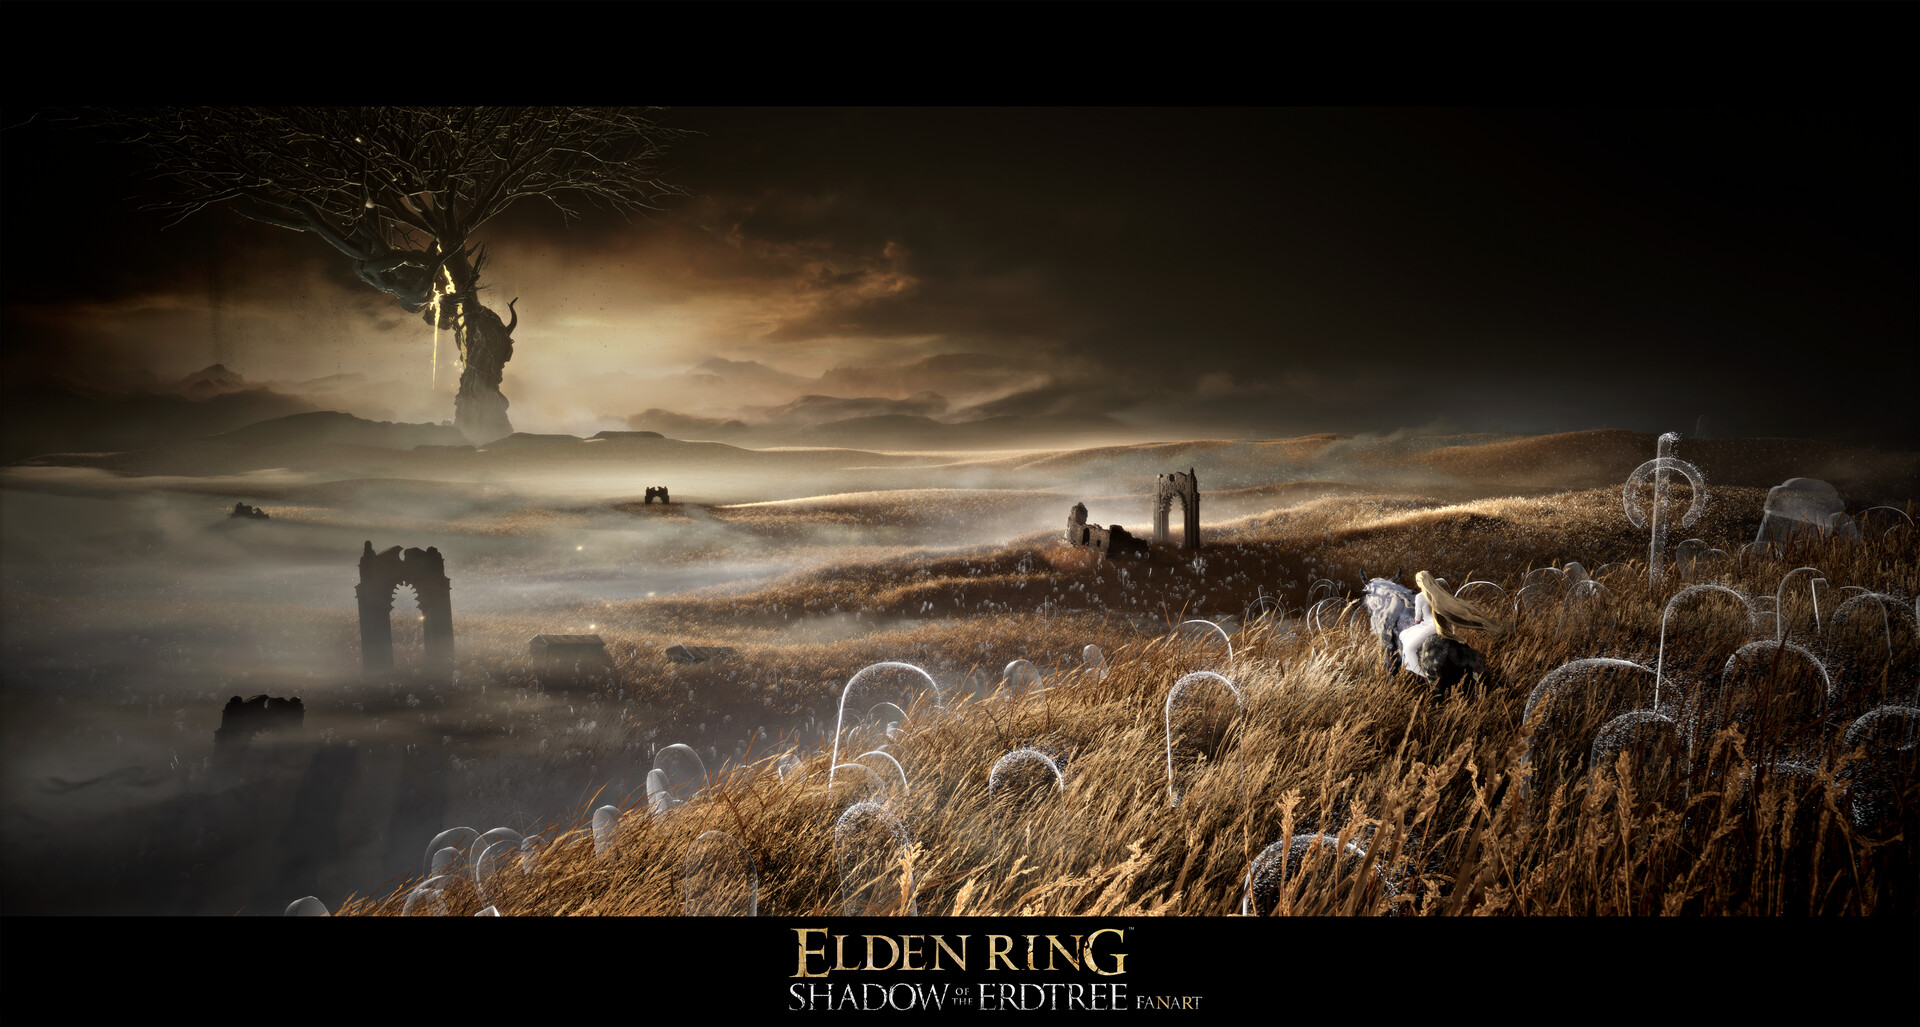 Elden Ring: Shadow of the Erdtree wallpapers or desktop backgrounds